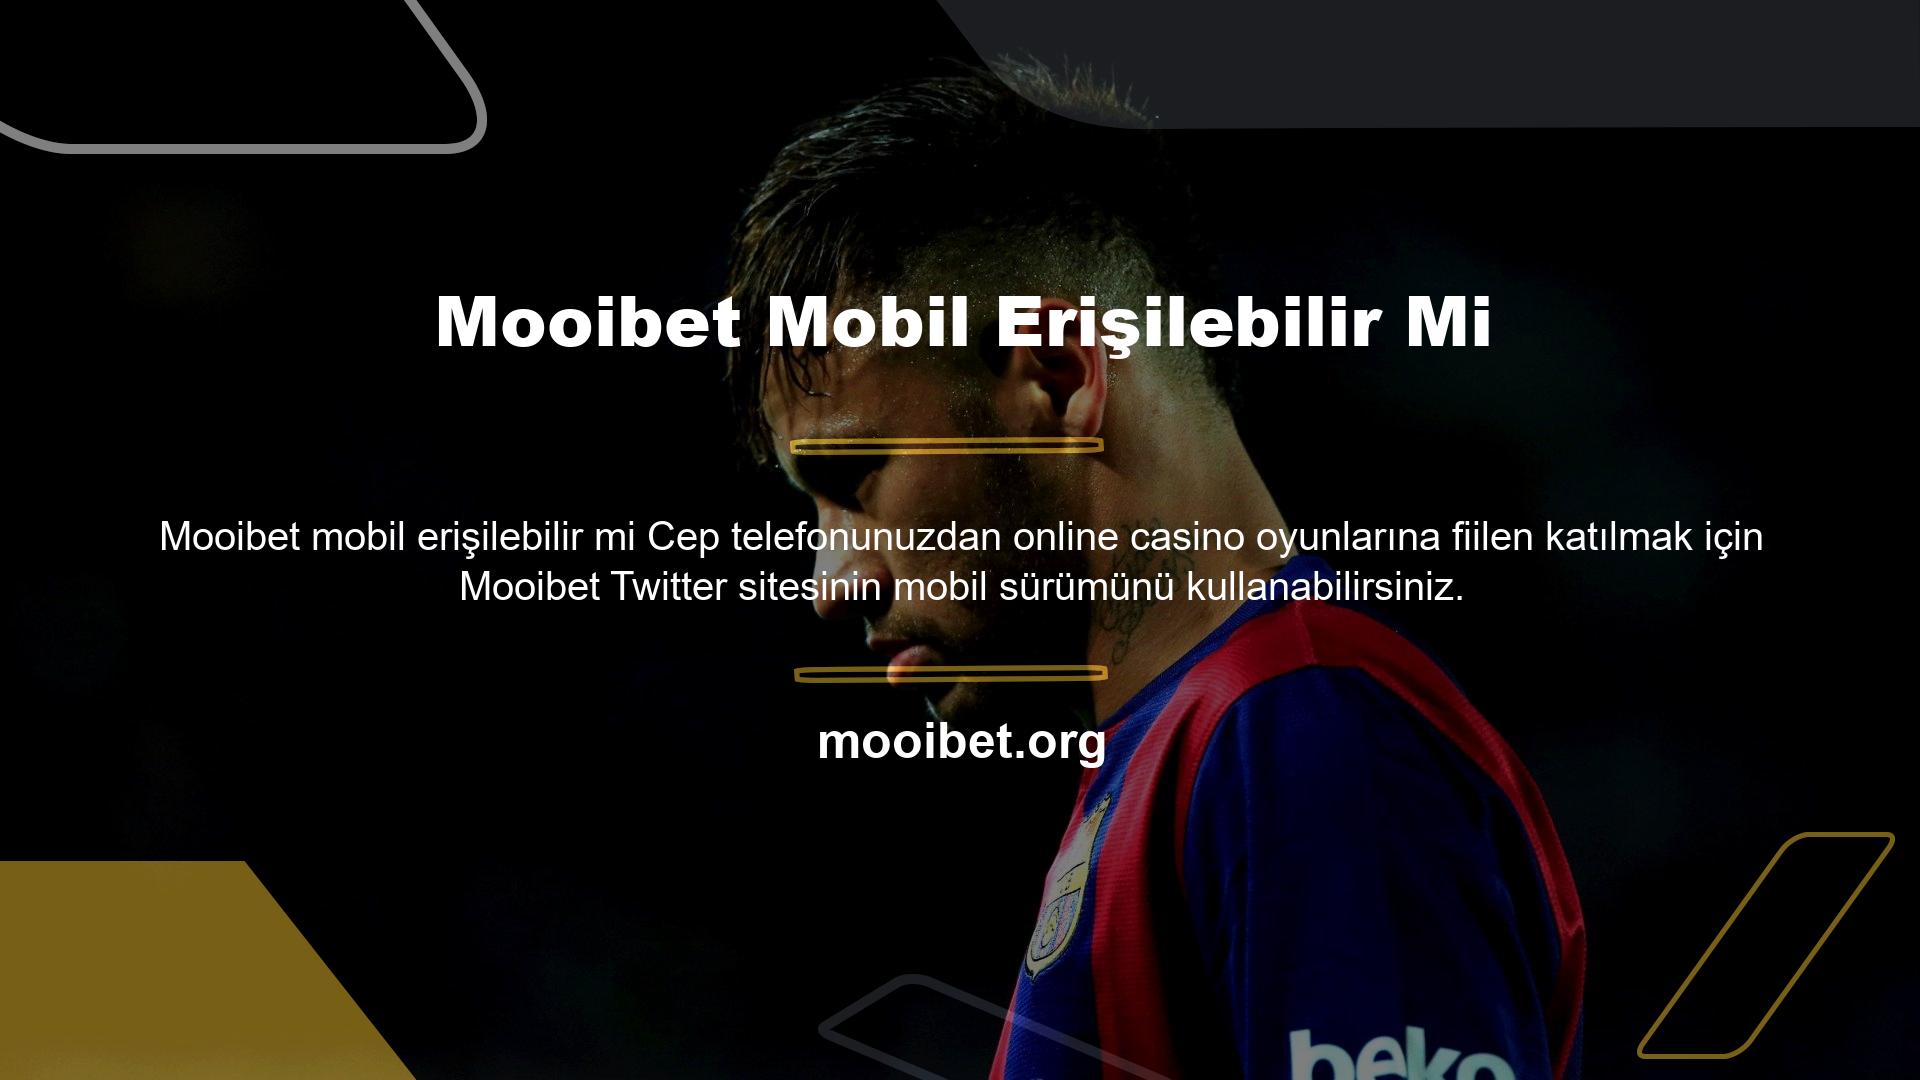 Mooibet üyeleri için özel olarak geliştirilen mobil program ile nerede olursanız olun bir online casino masasına katılın